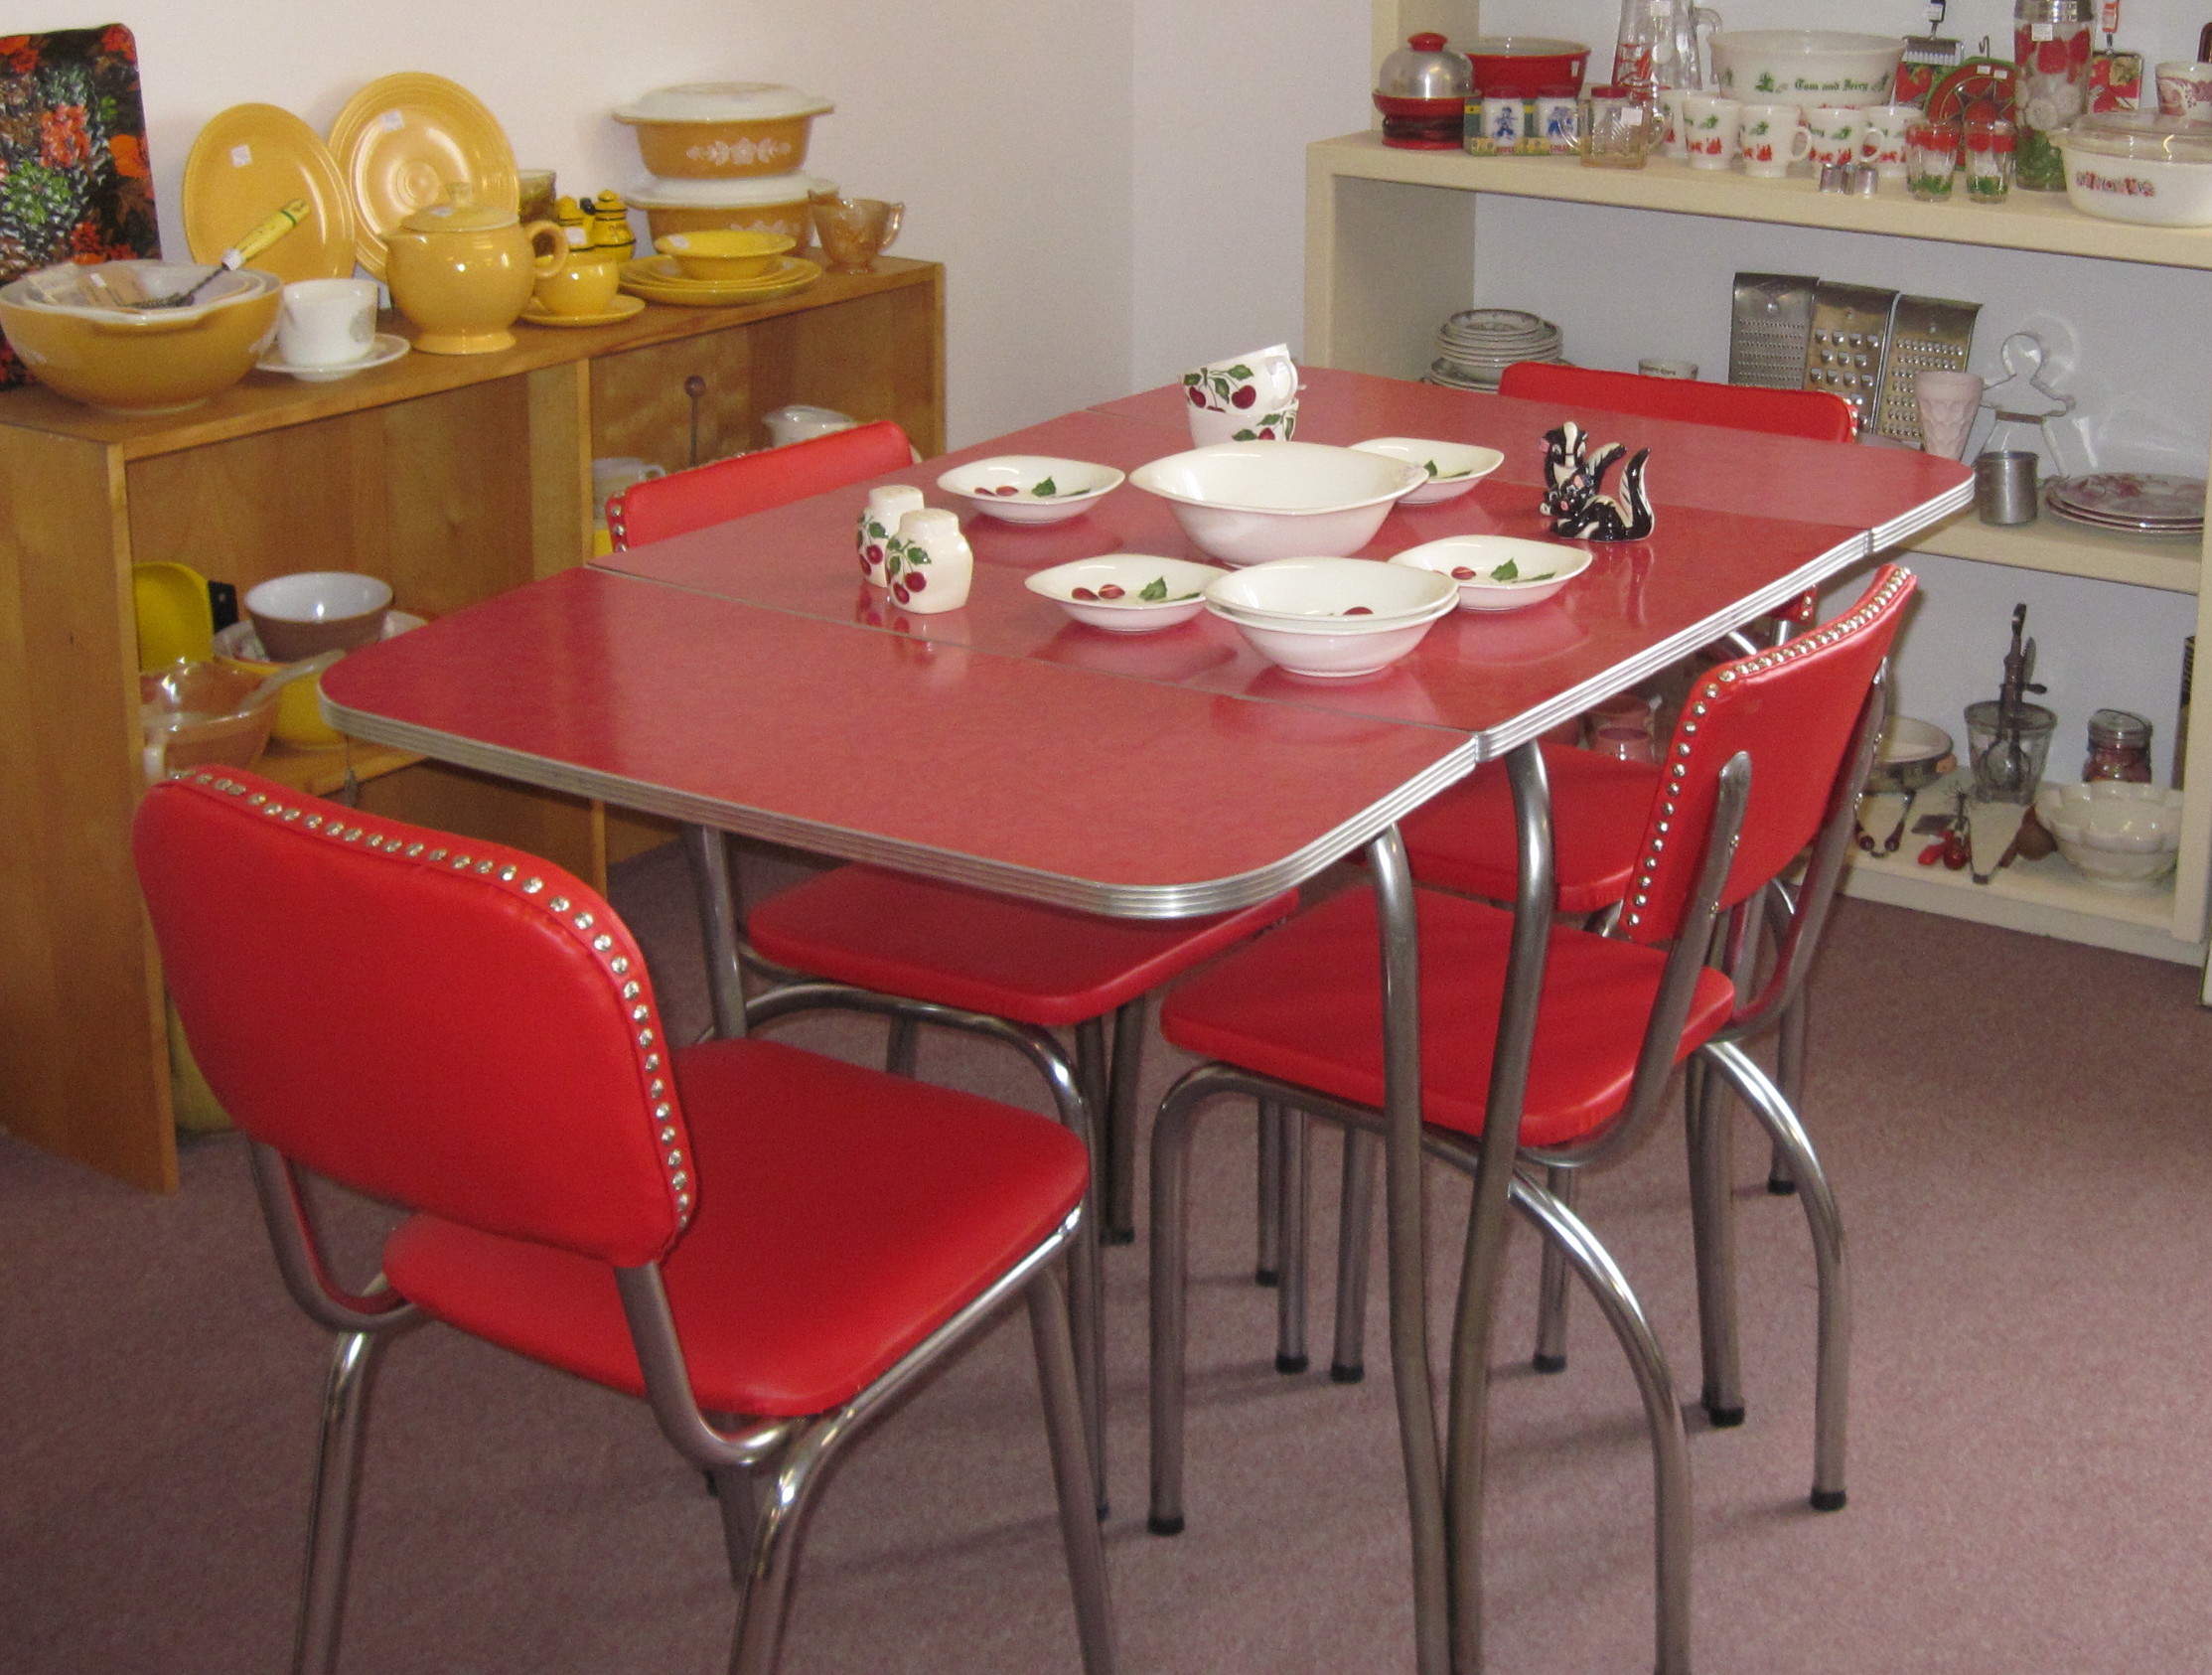 1950ﾒs retro kitchen table chairs photo - 8